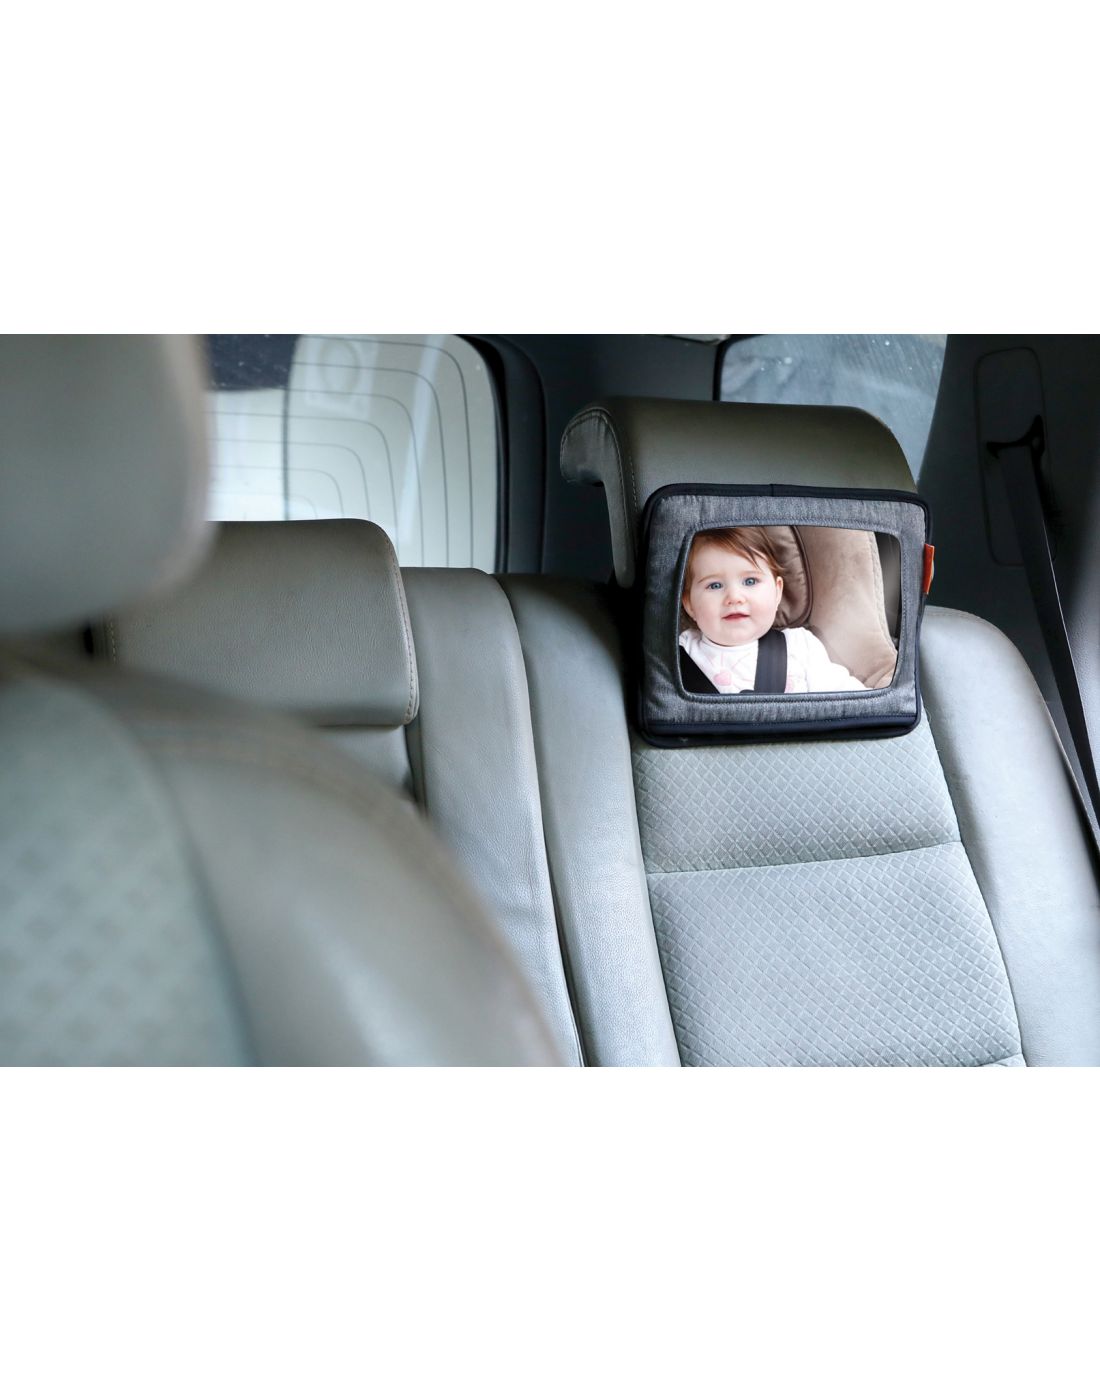 Στήριγμα Tablet & Καθρέφτης Αυτοκινήτου Grey DreamBaby